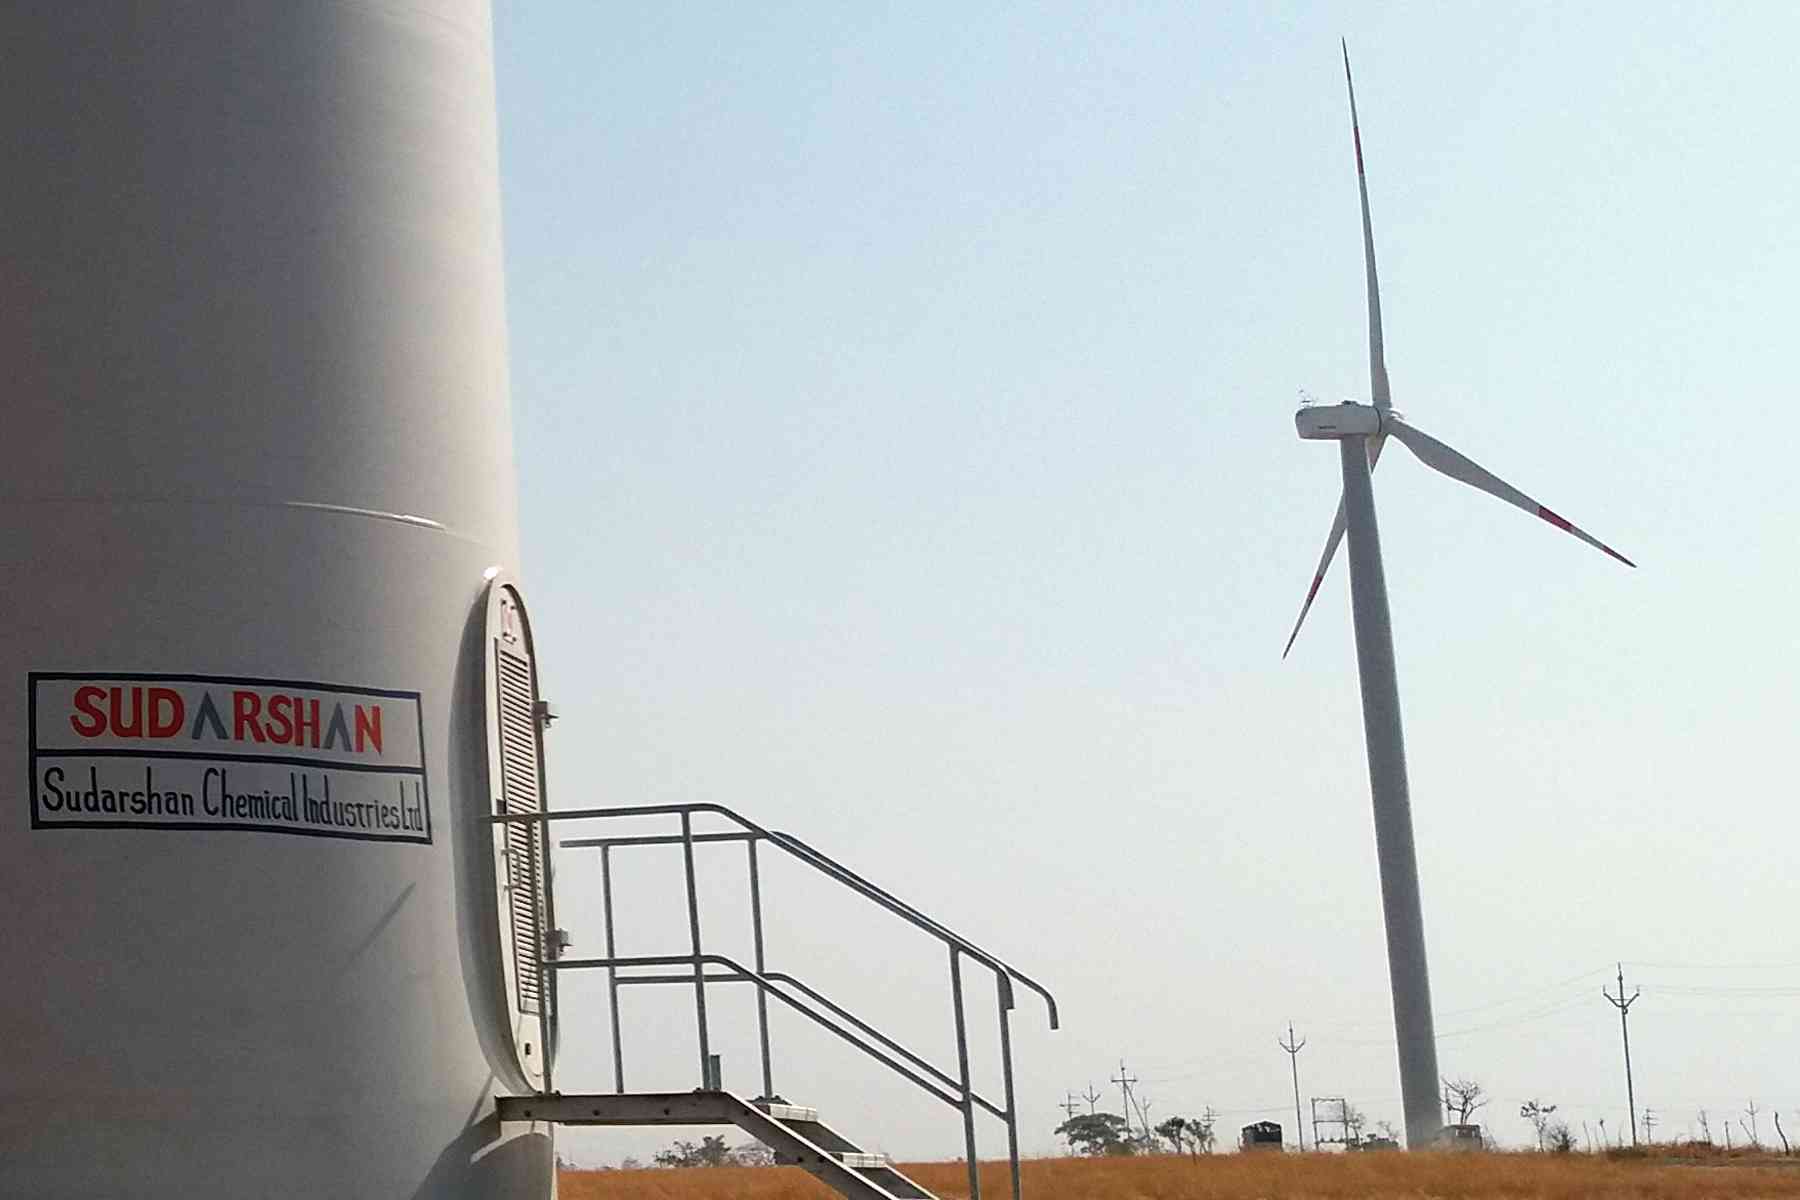 Wind turbine energy